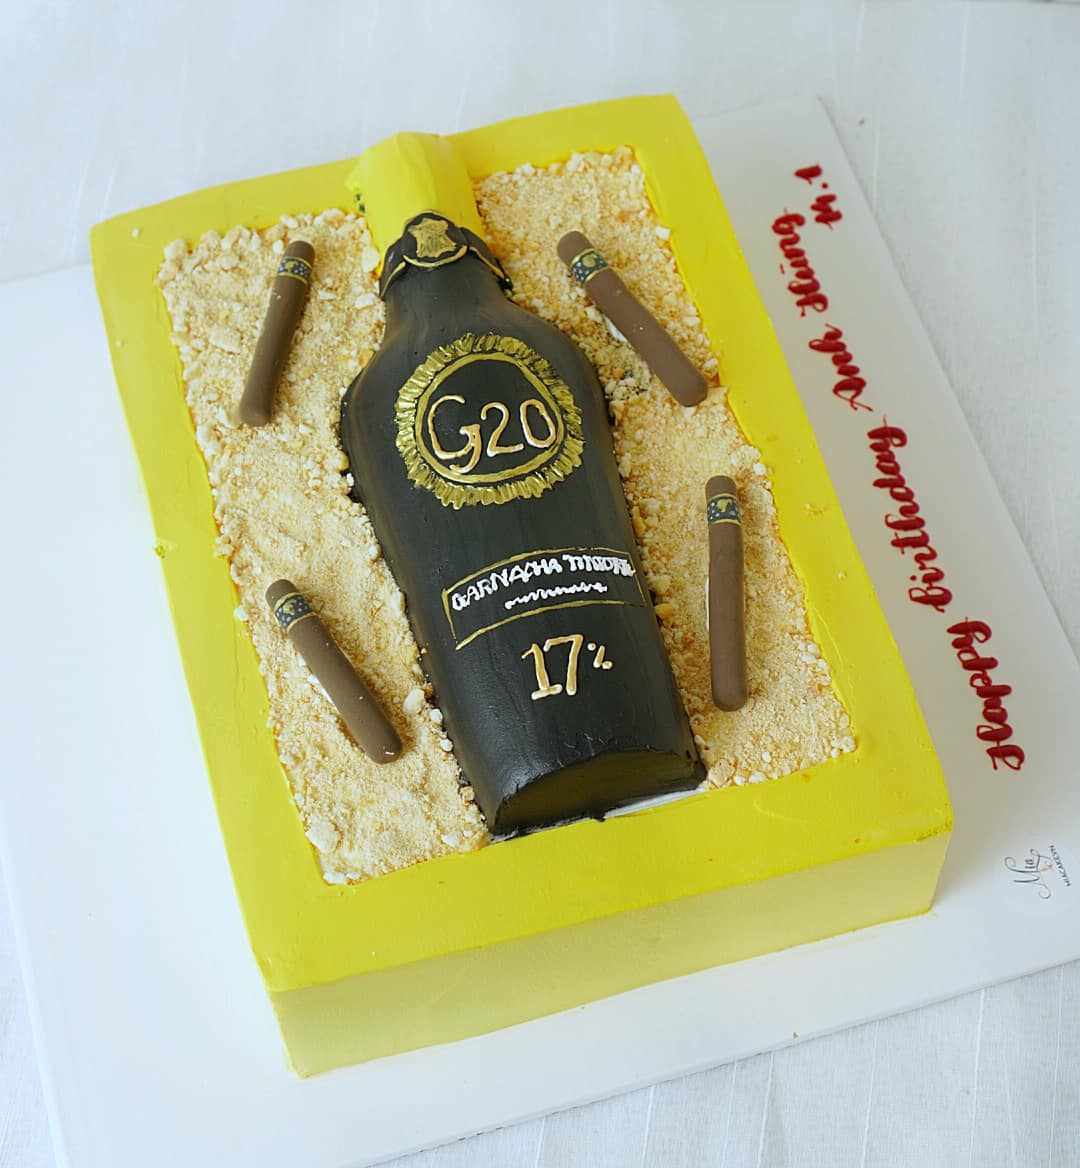 Bánh sinh nhật rượu mạnh kỳ công ấn tượng trong ngày sinh nhật chàng 6270   Bánh sinh nhật kỷ niệm